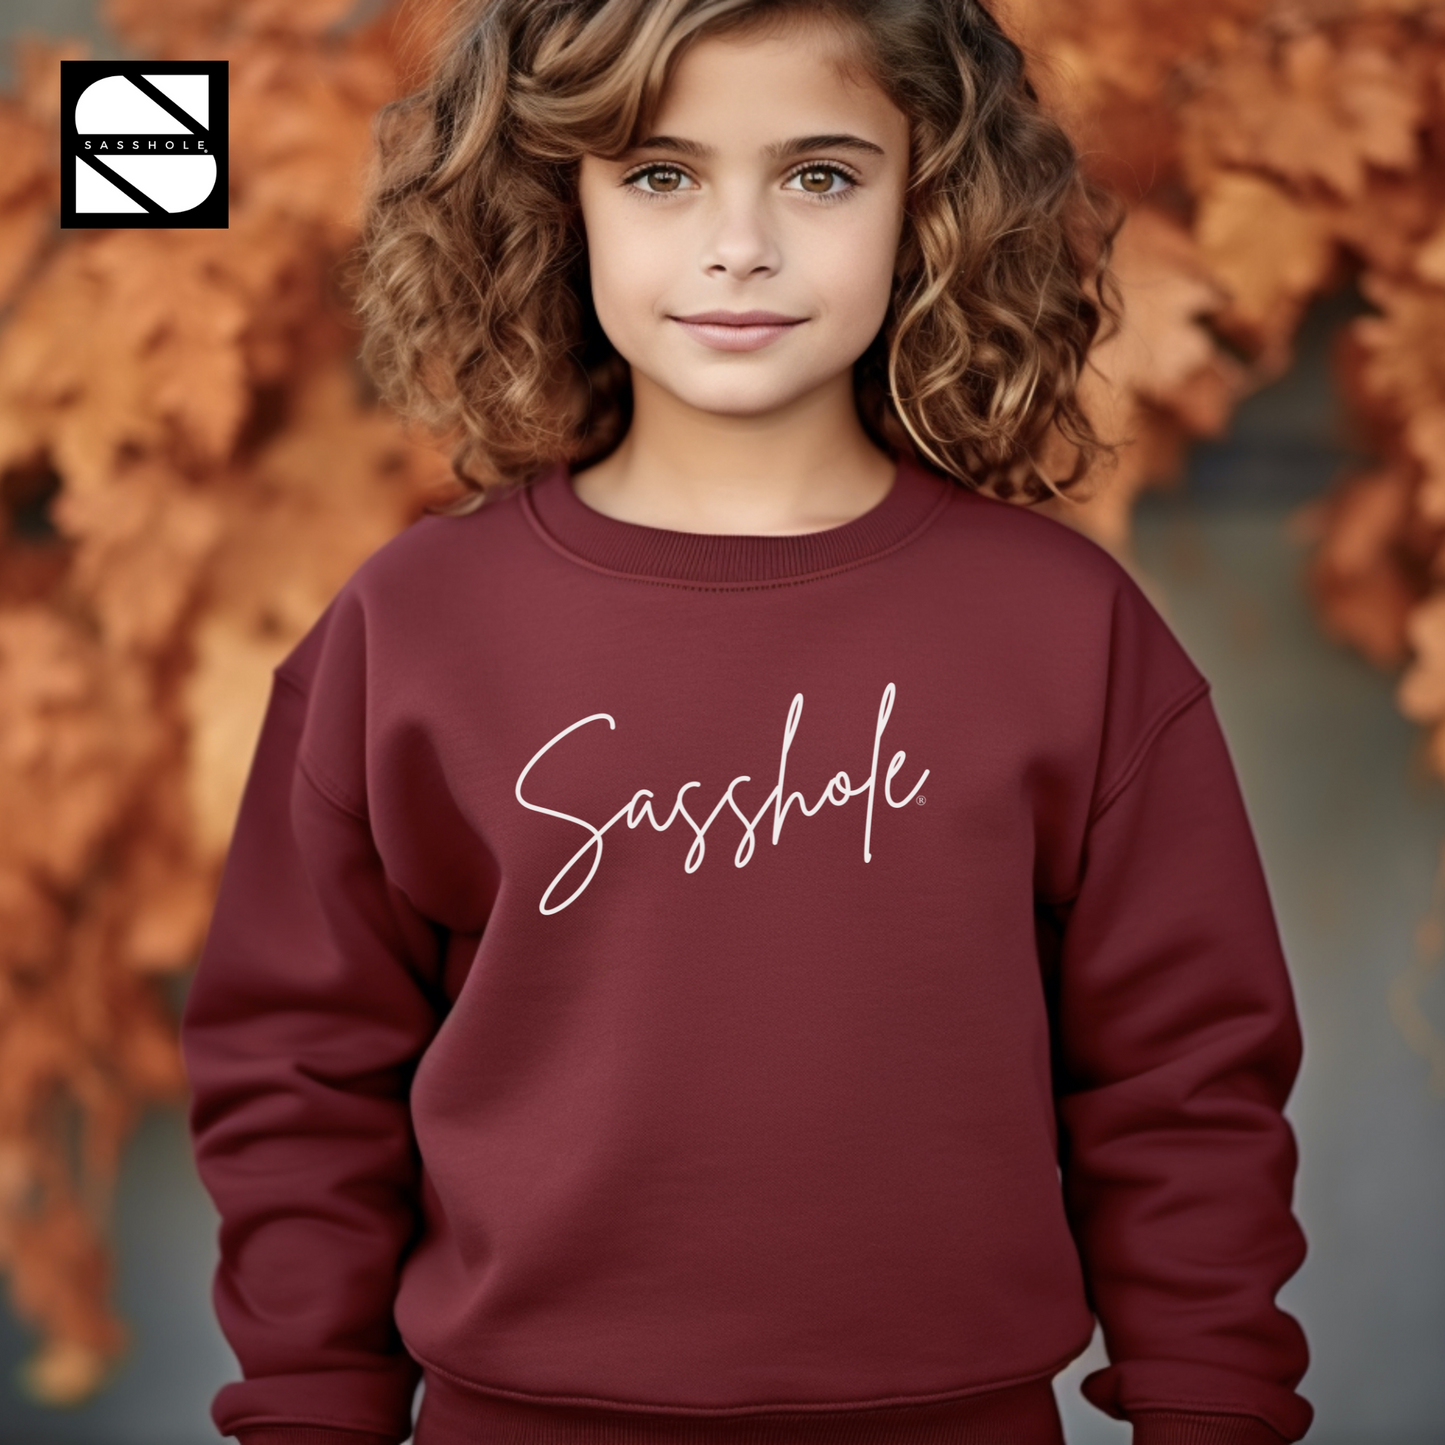 Sassy Tude & Trend Setter: Sasshole® Youth Girls Sweatshirt